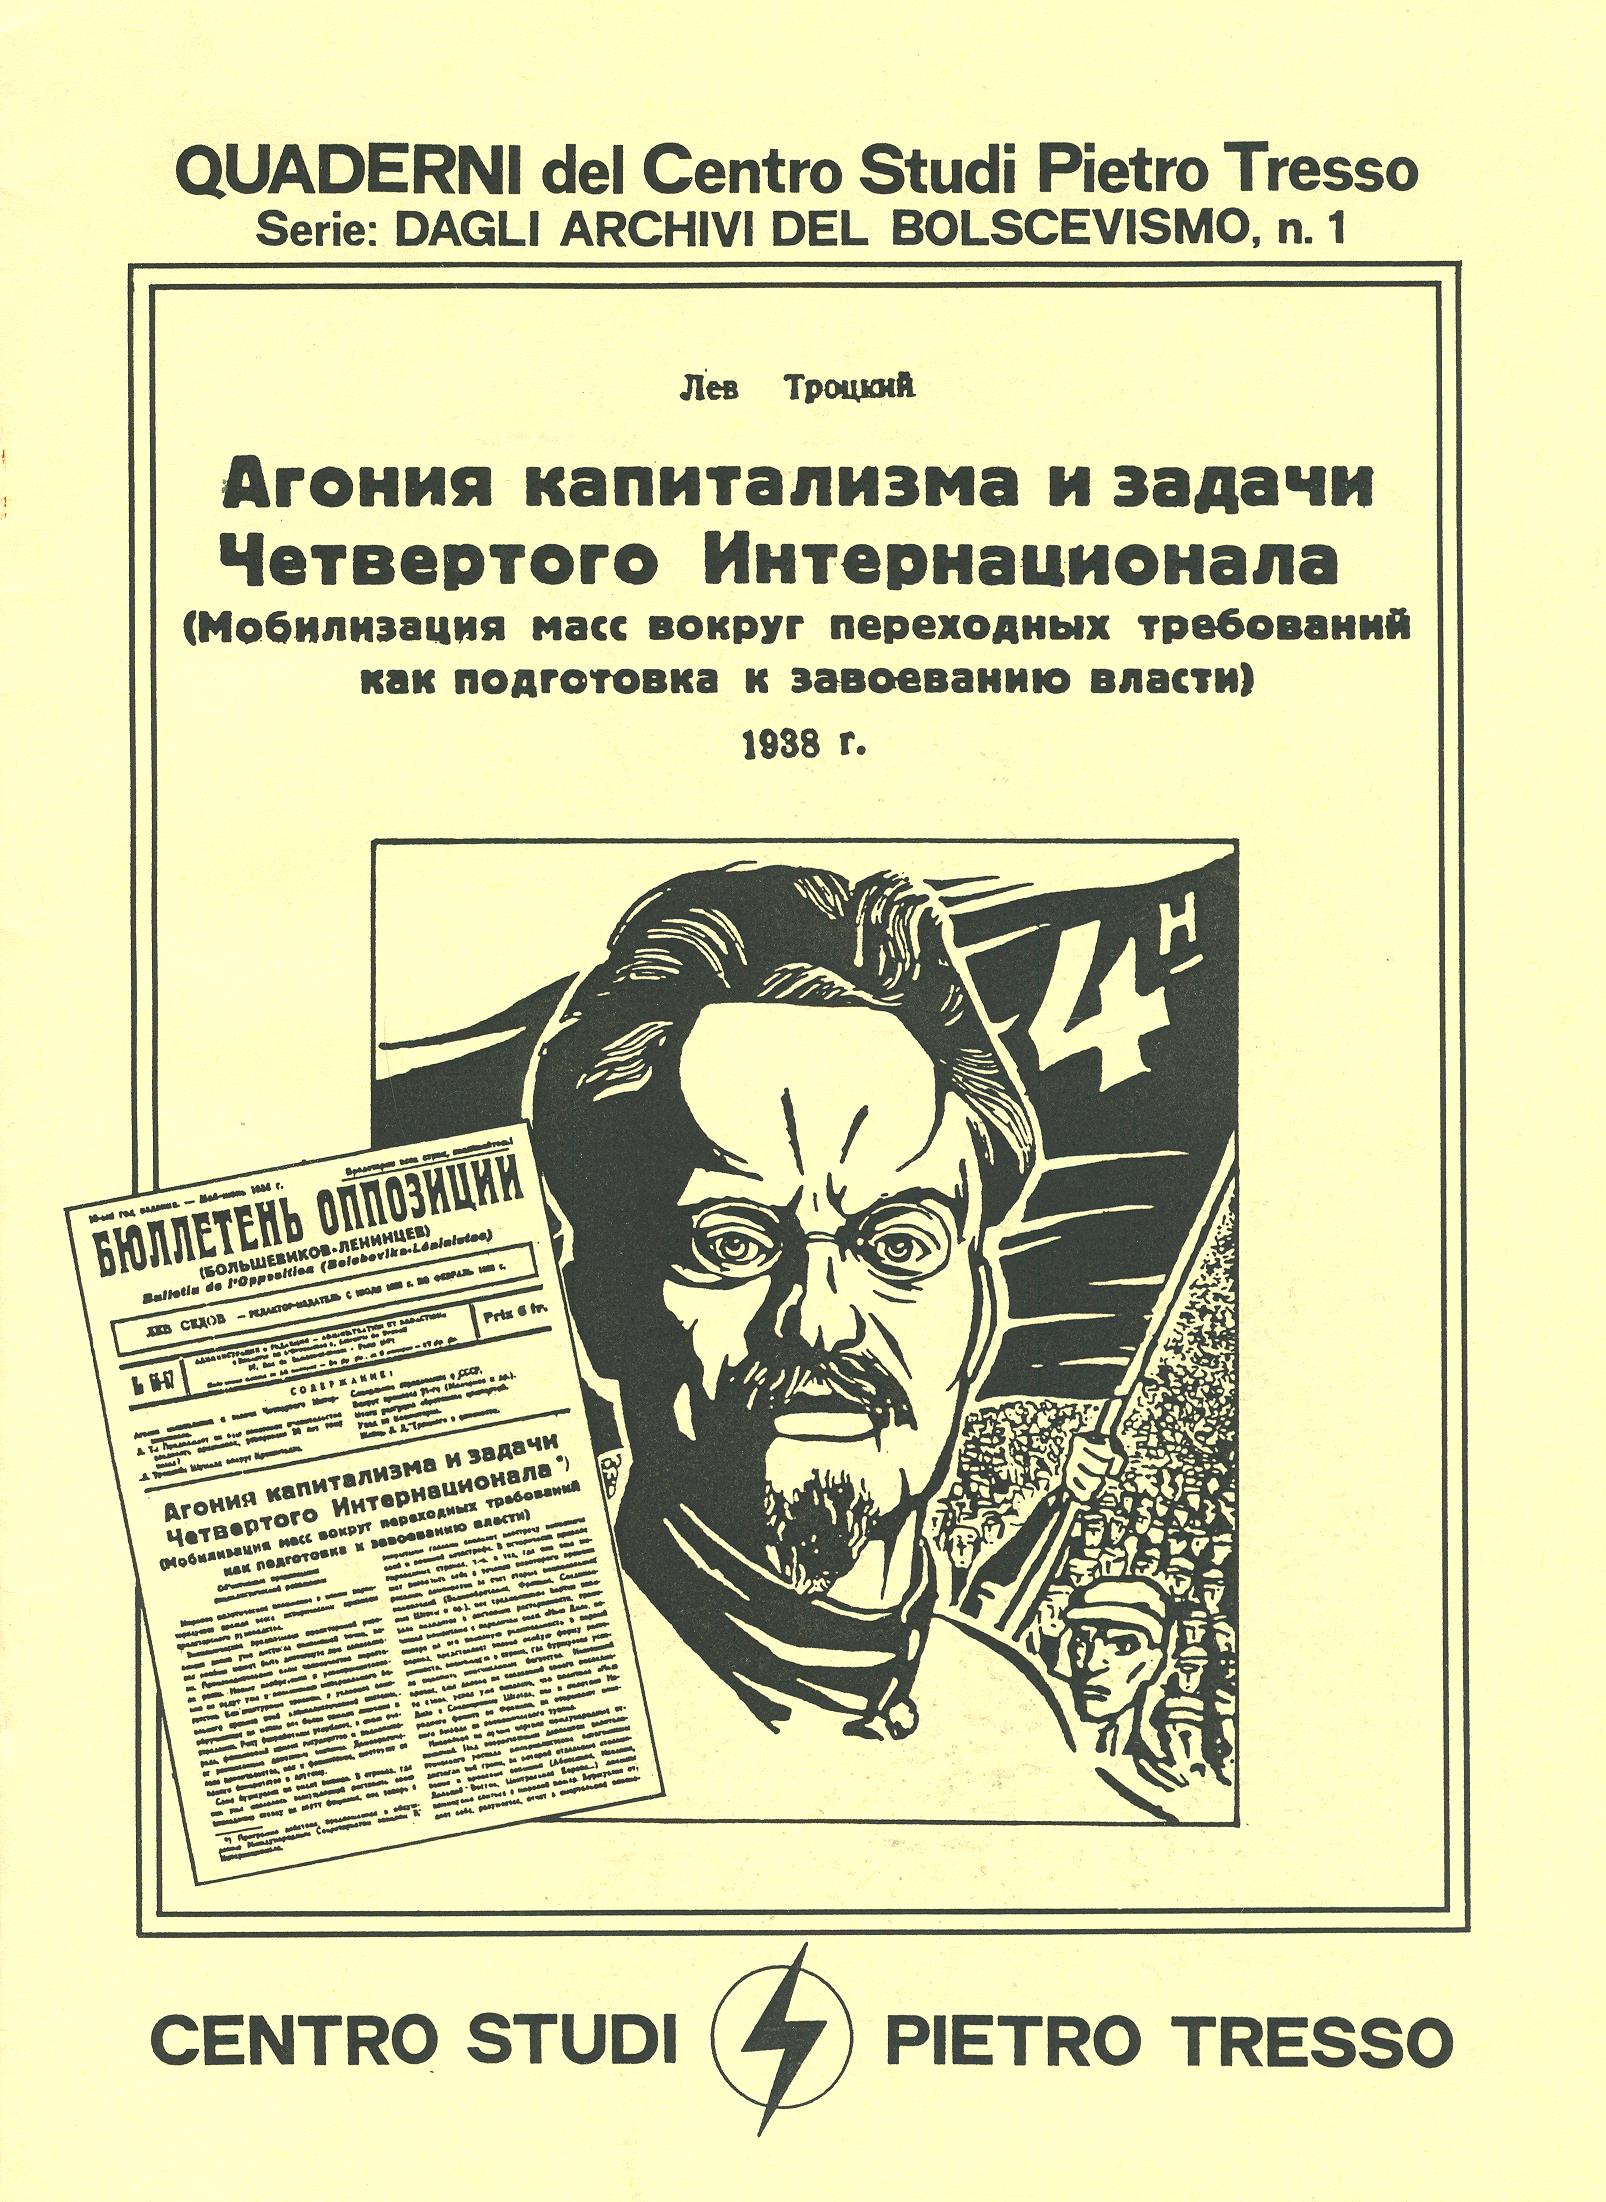 Dagli archivi del bolscevismo n. 1 (marzo 1986) - pag. 1